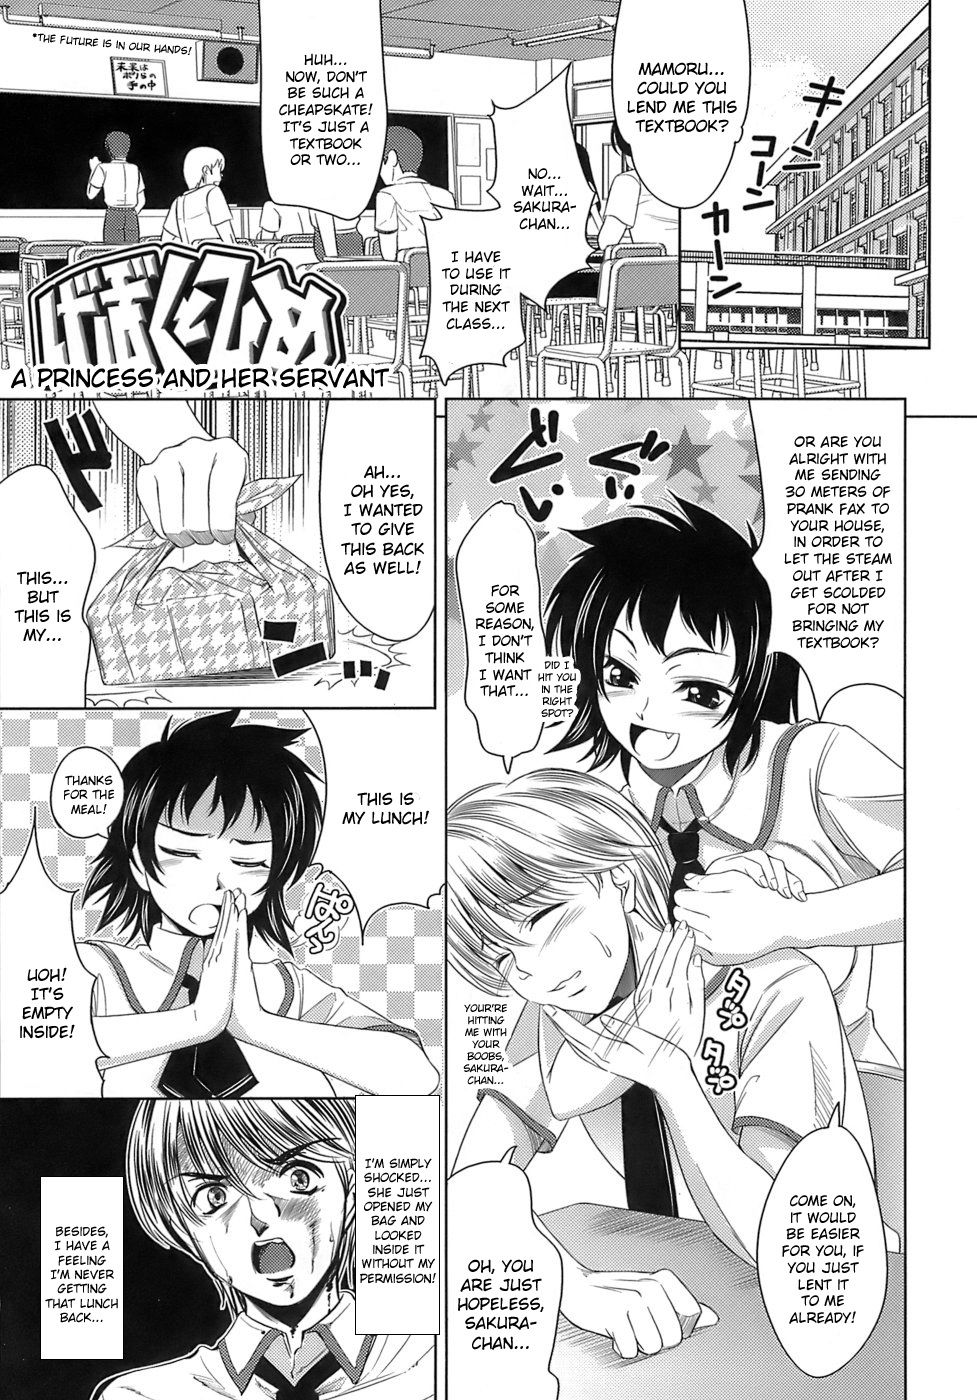 Hentai Manga Comic-A princess and her servant-Read-1